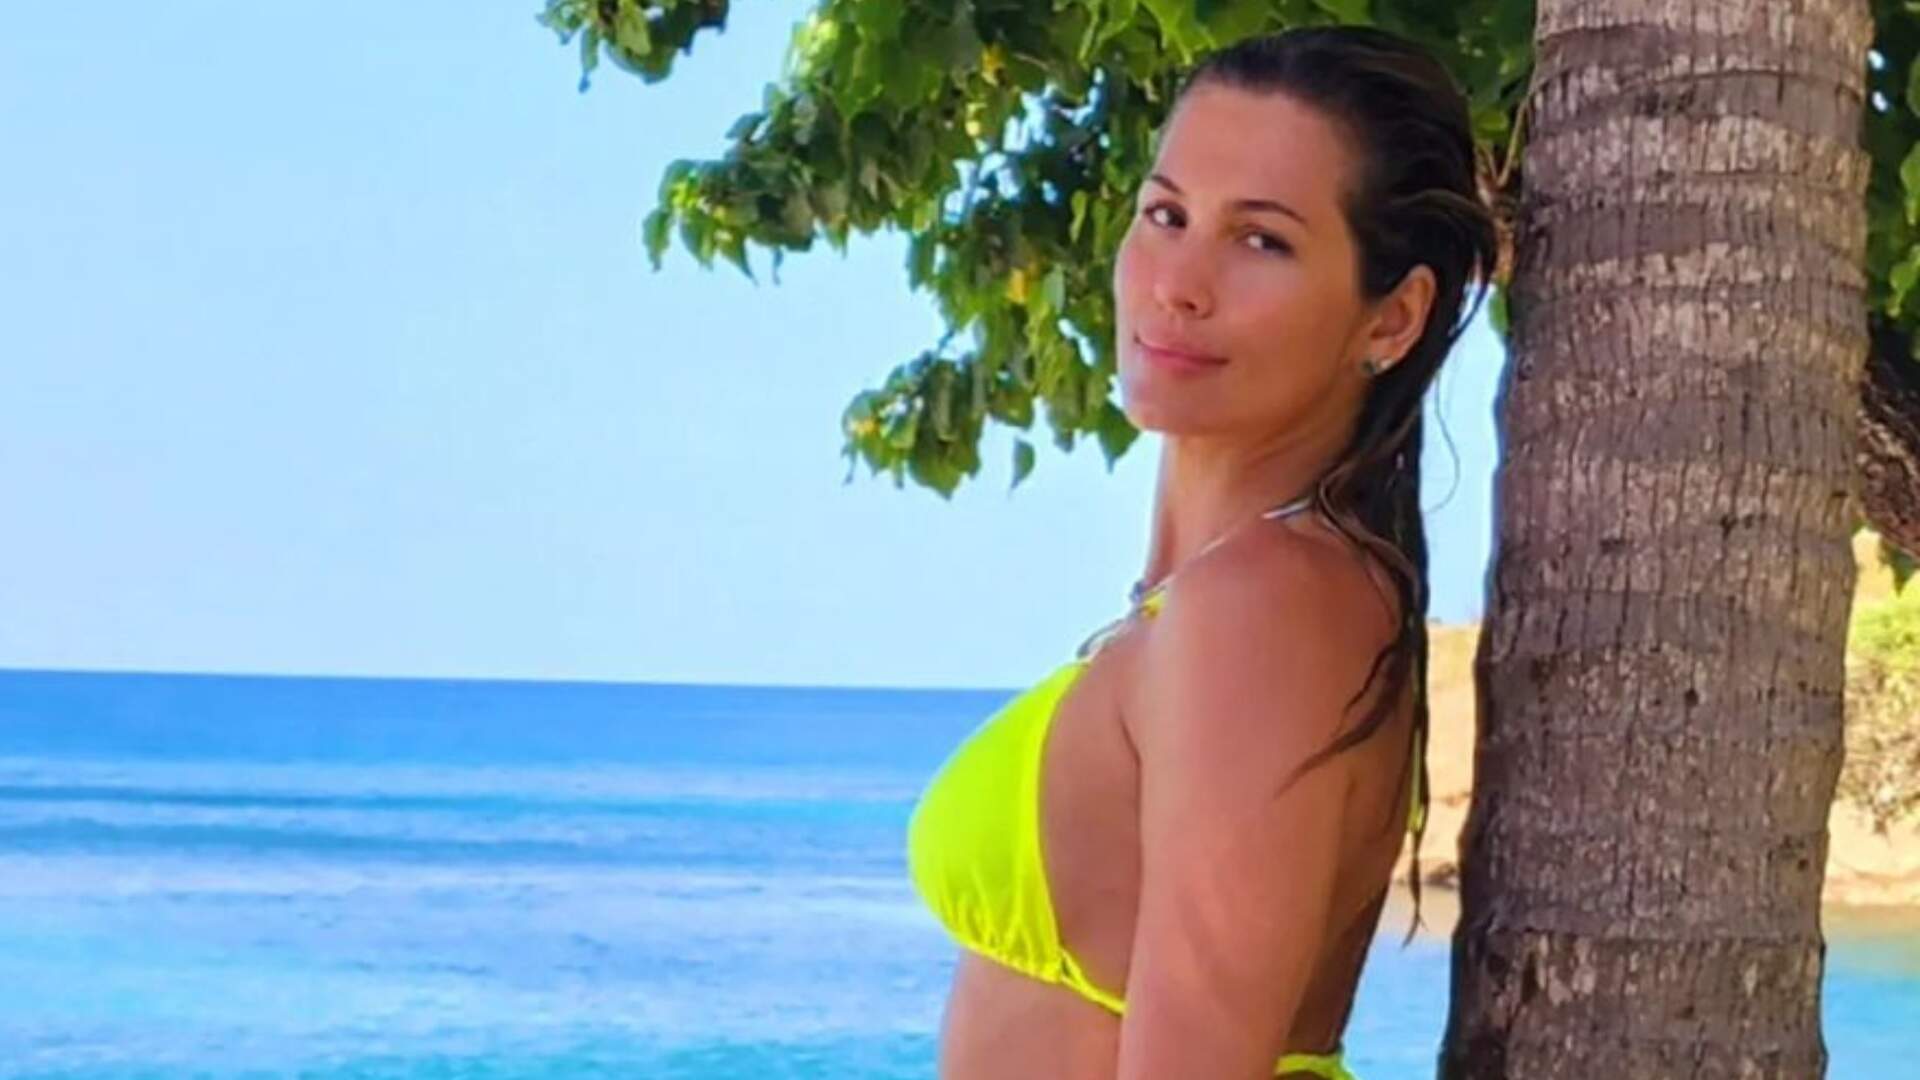 Lívia Andrade compara o tamanho de seu bumbum com árvore na praia: “Só um pedacinho” - Metropolitana FM